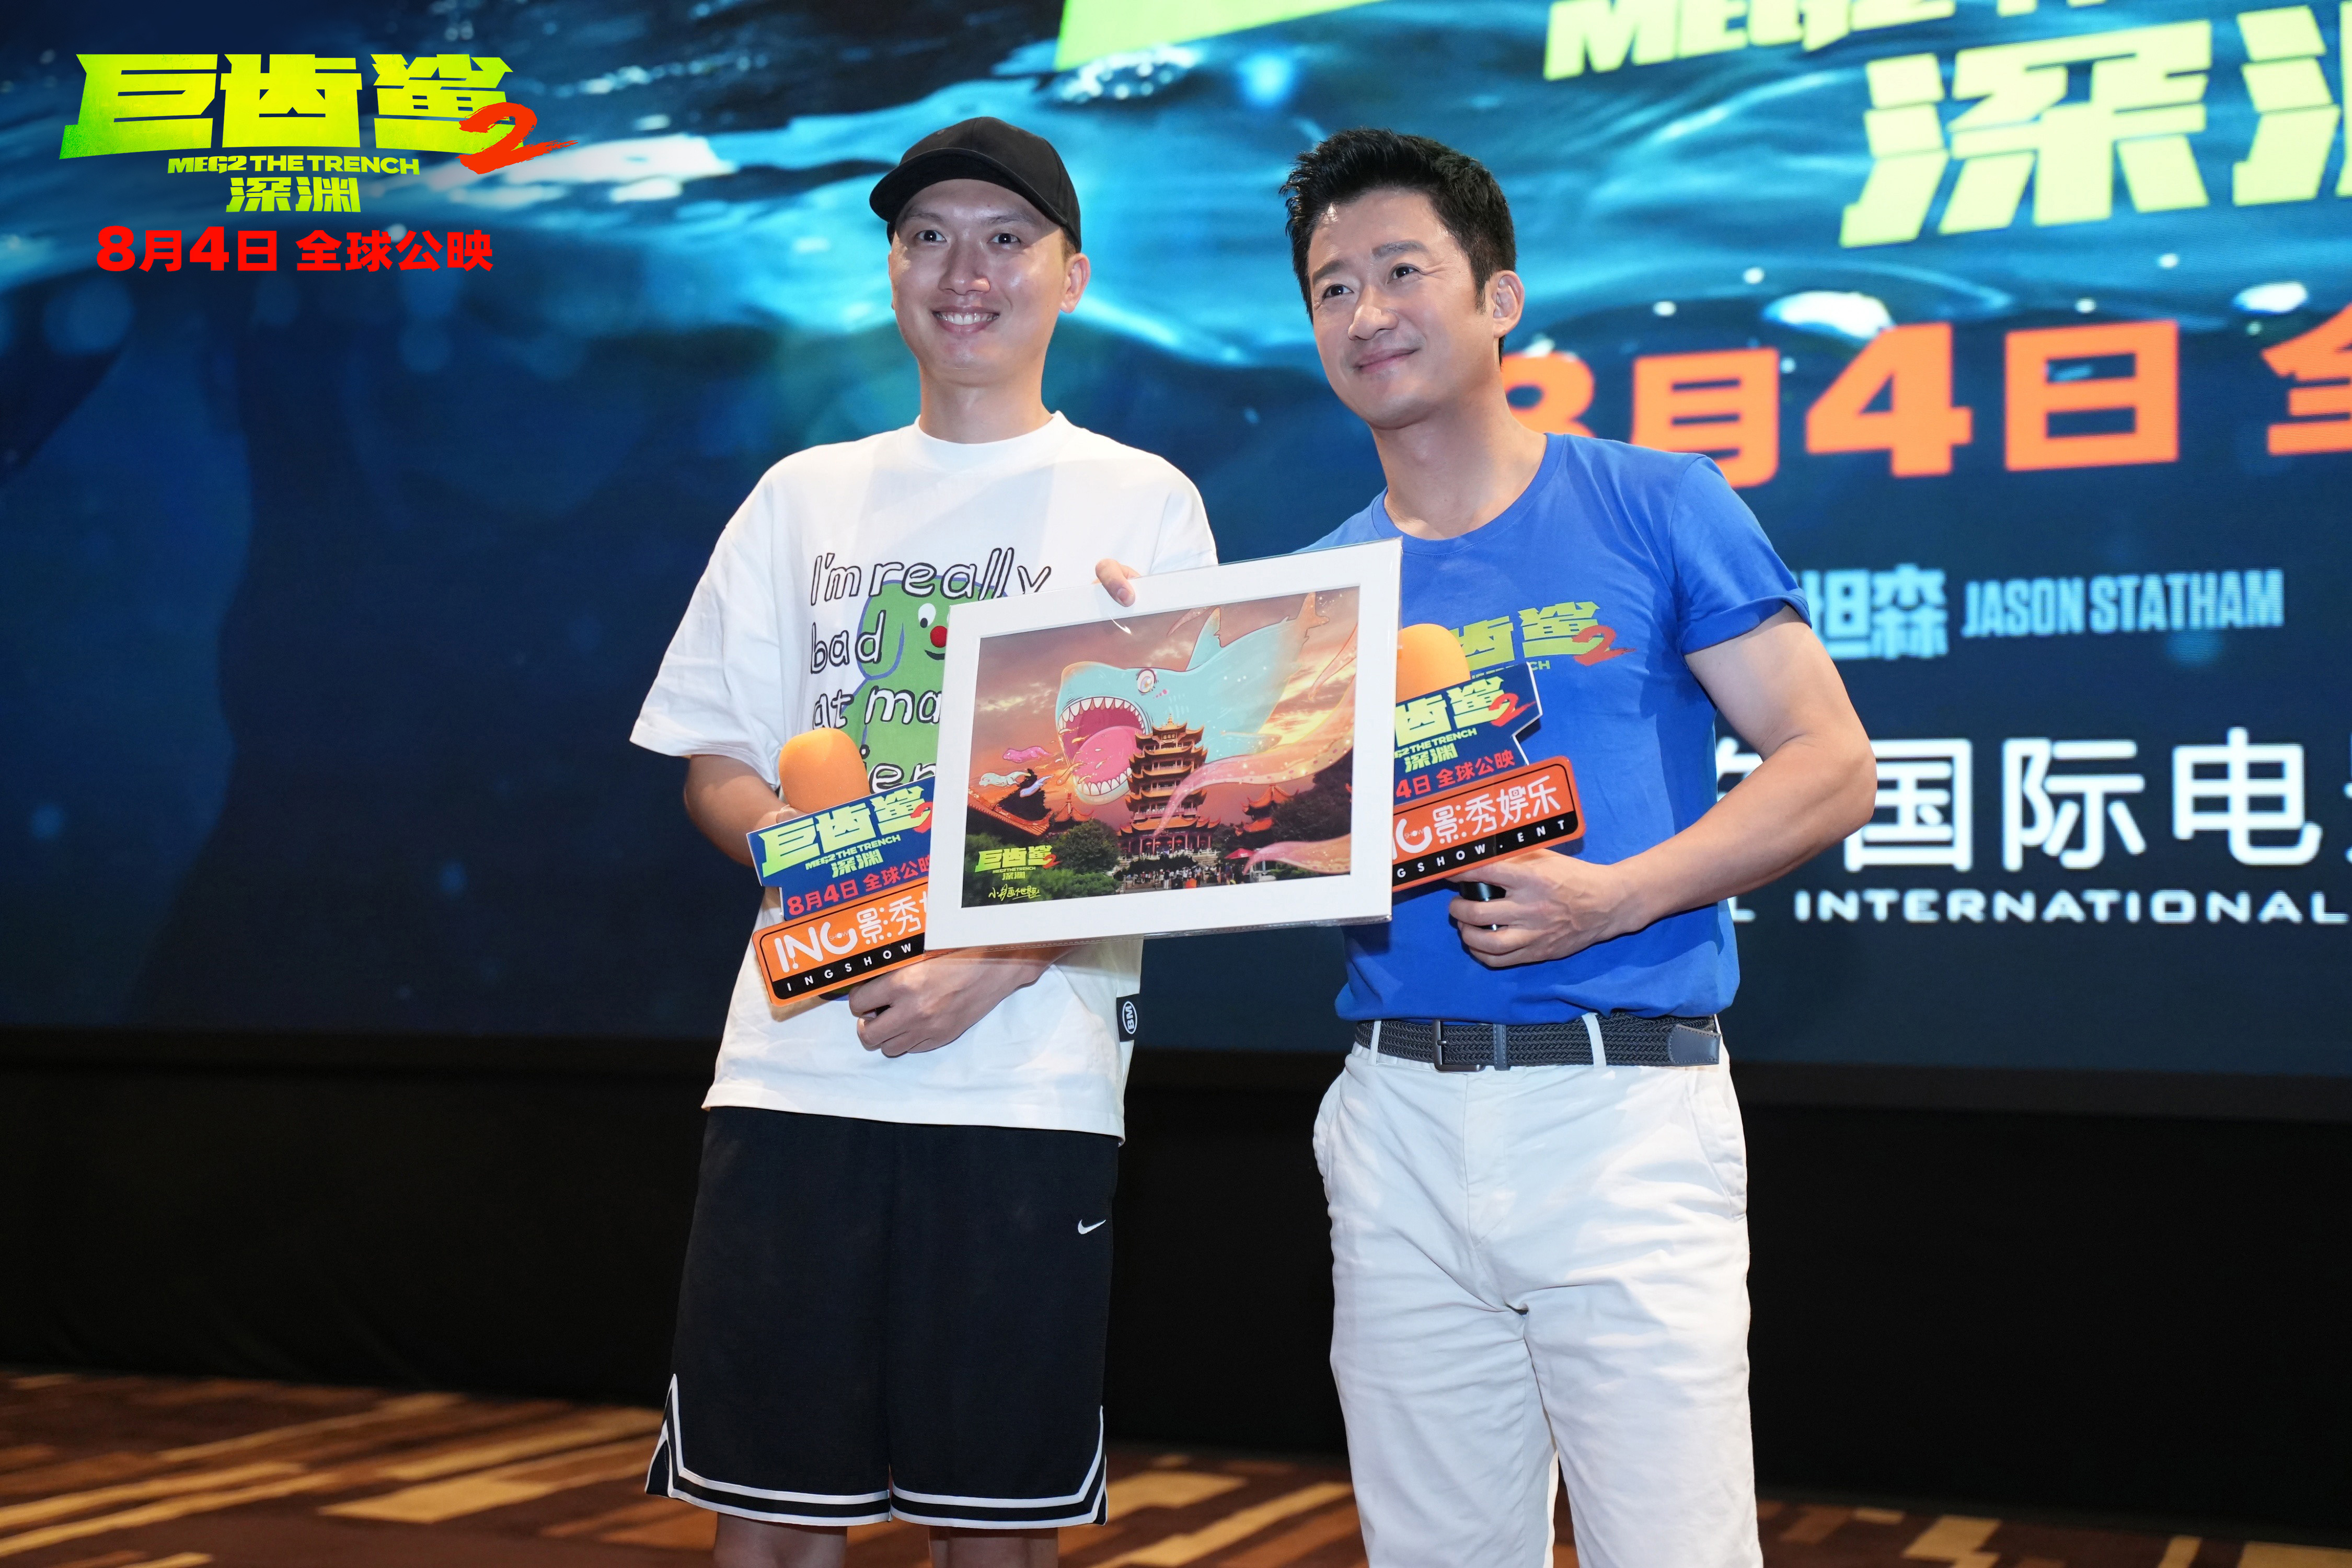 《巨齿鲨2》路演 吴京称挑战新类型是演员的幸运